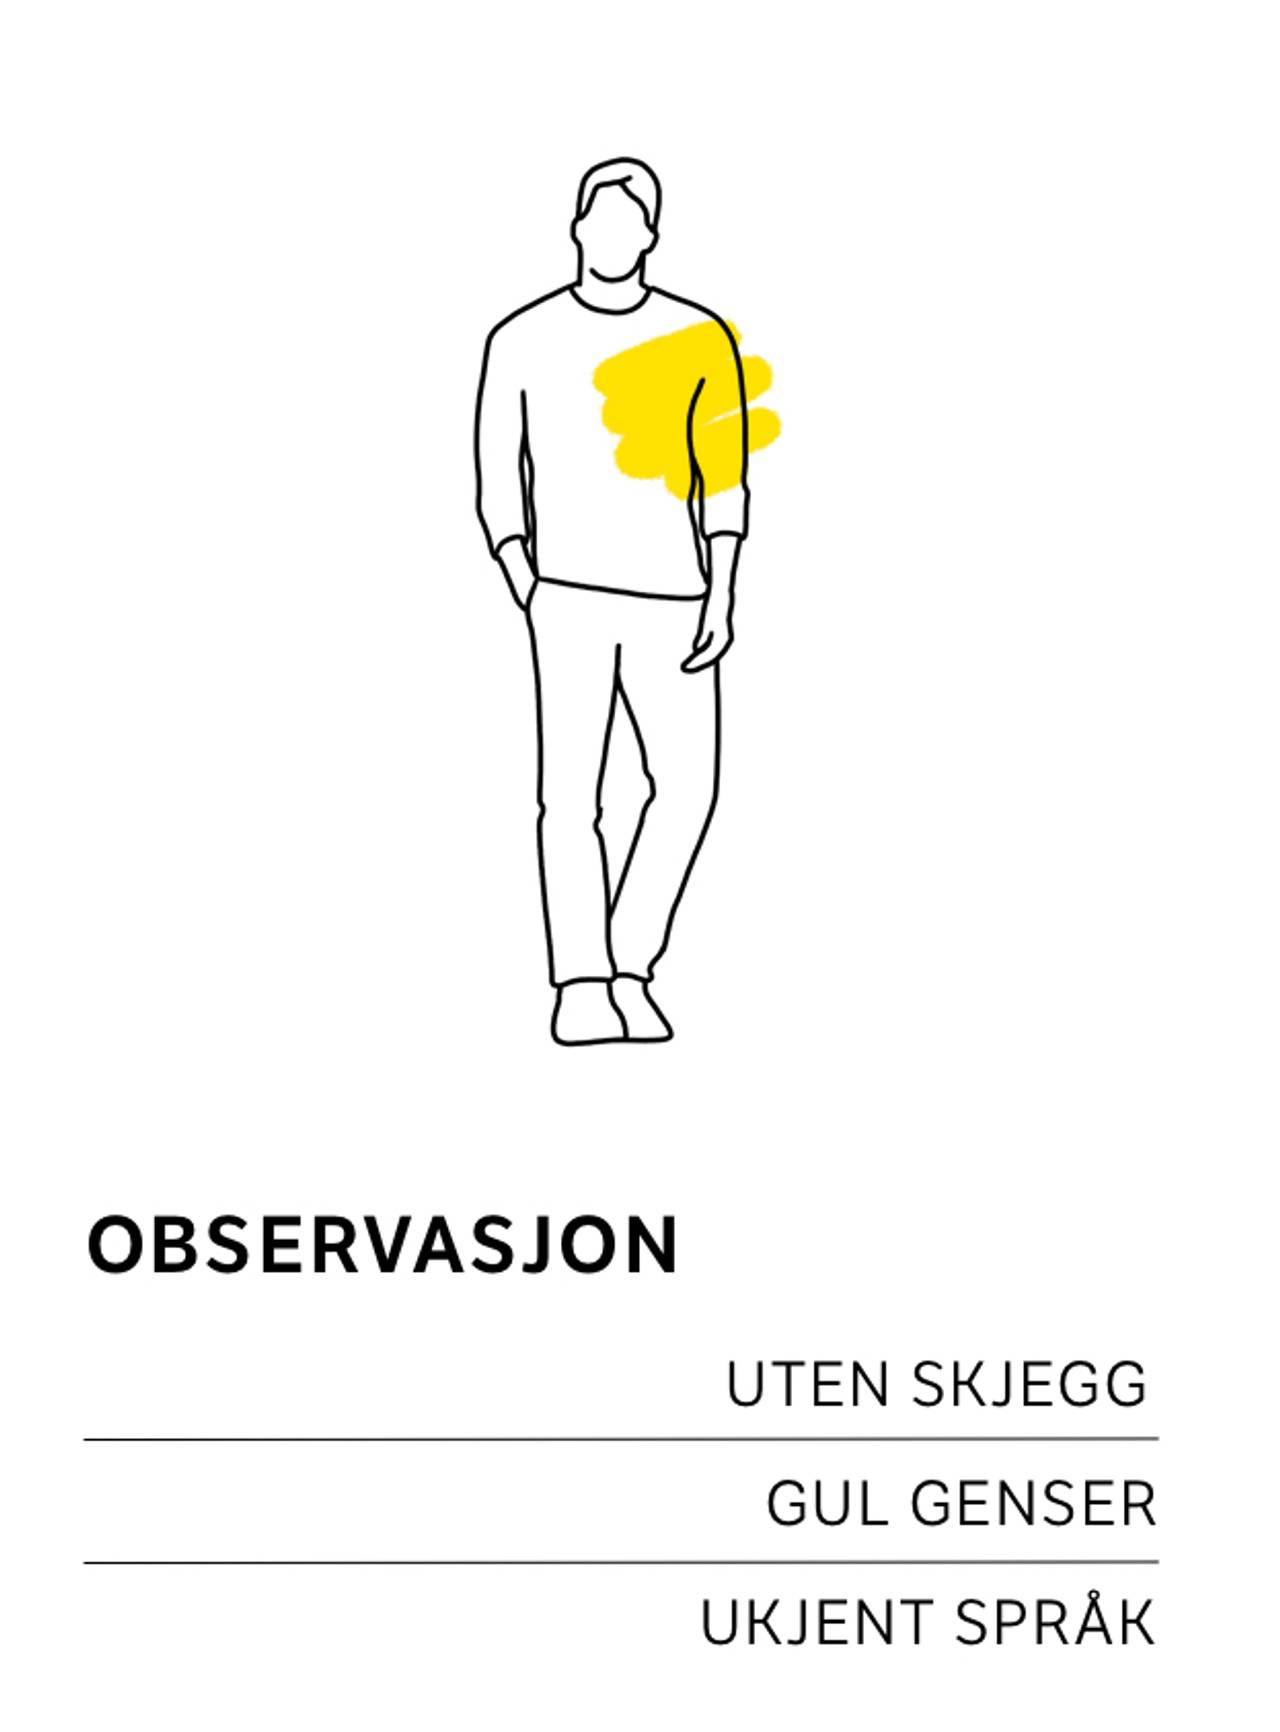 Obeservasjon i gul genser